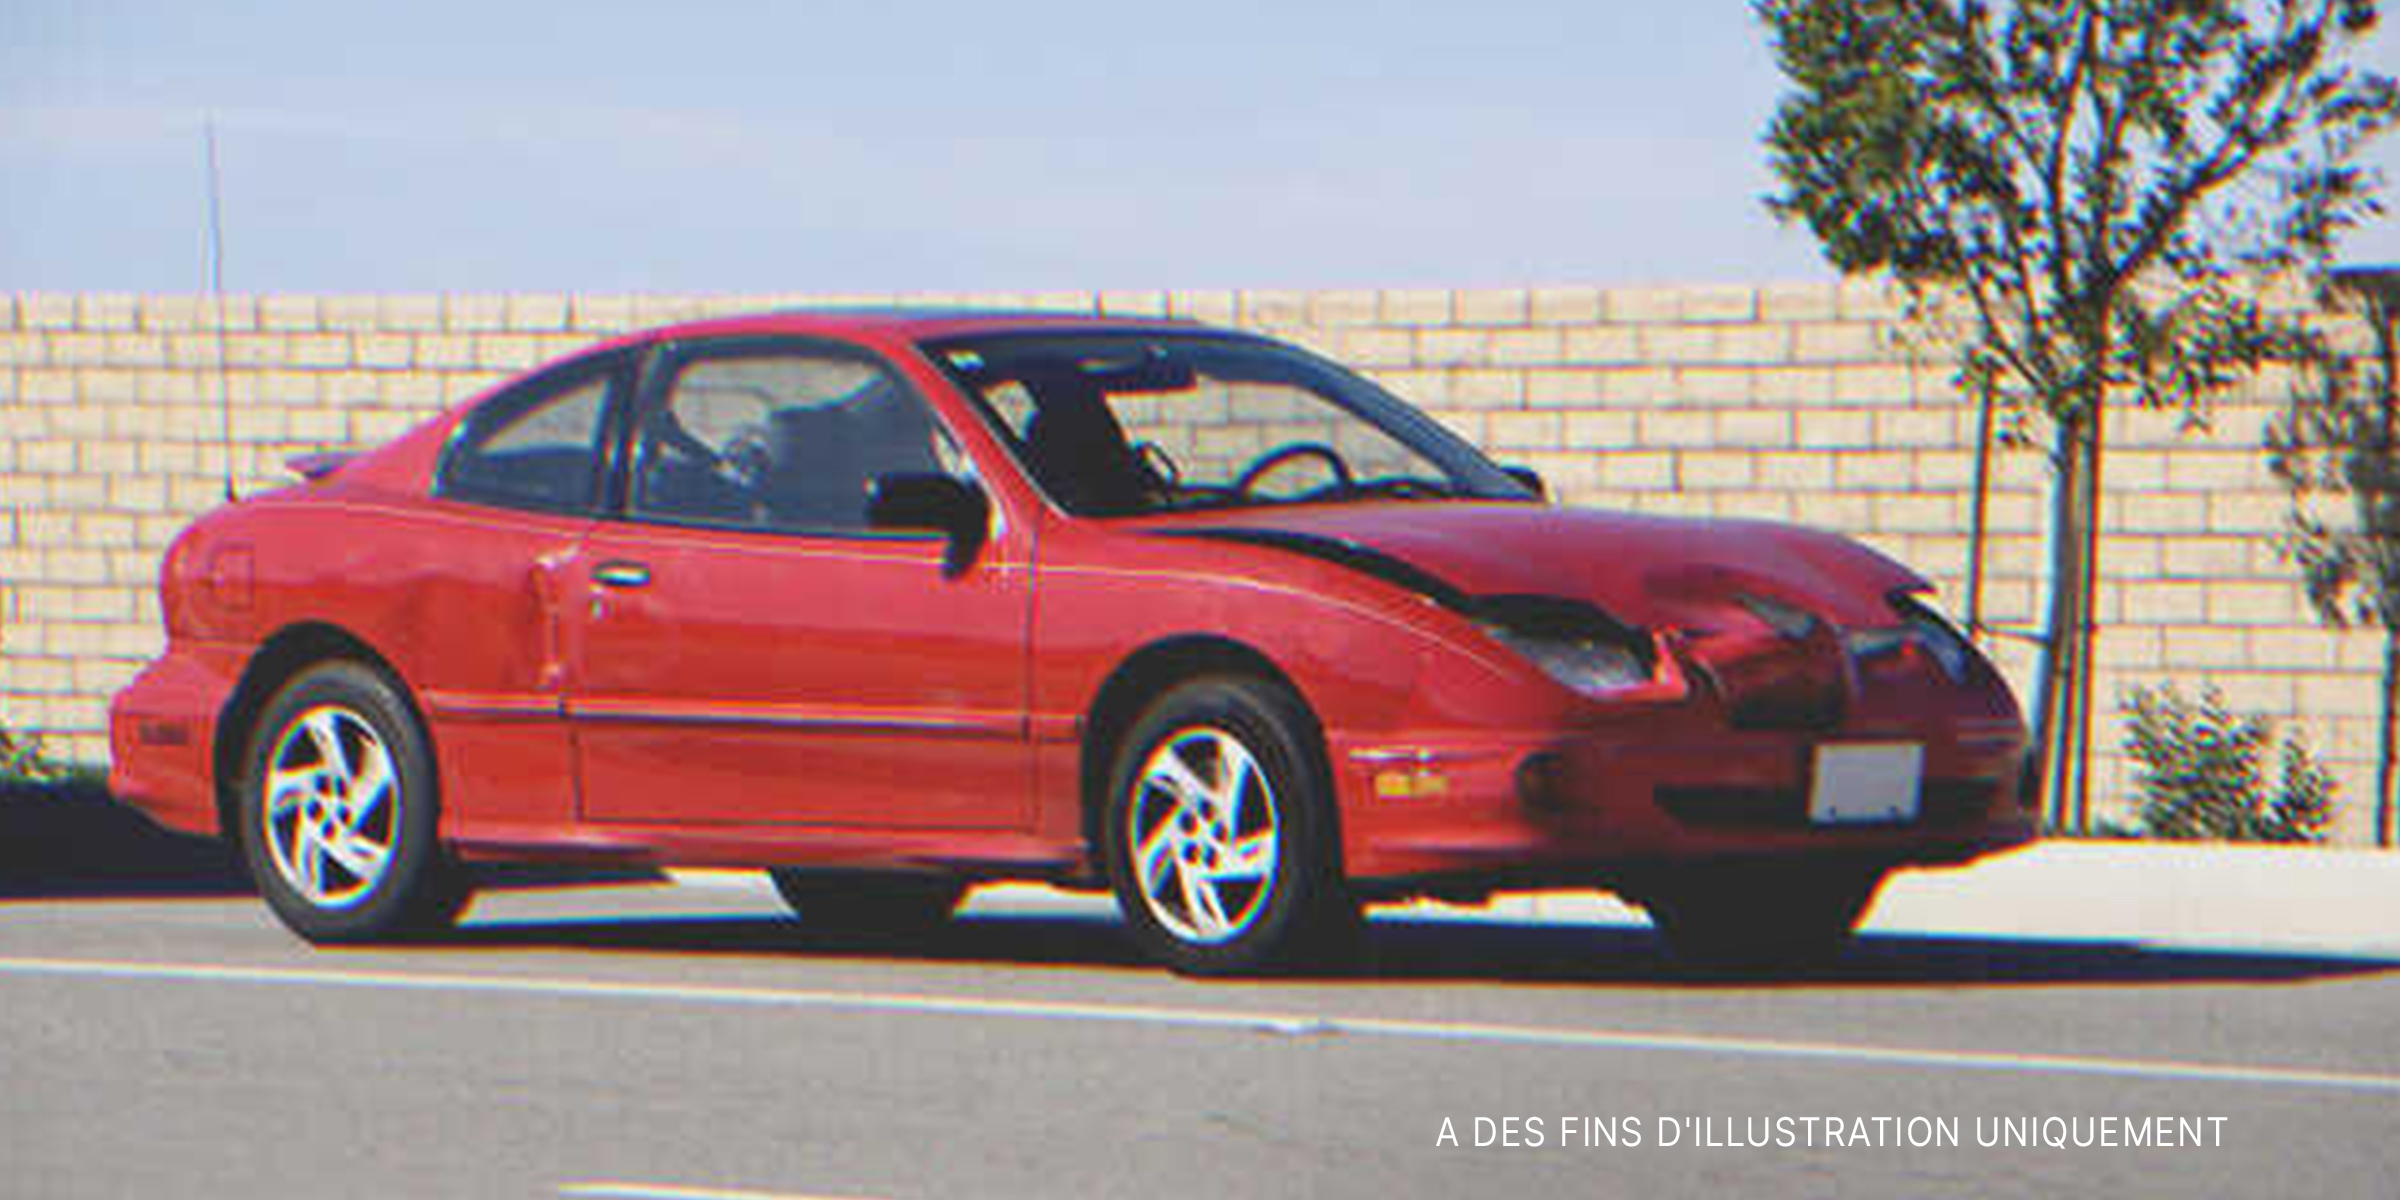 Une voiture rouge avec un capot brisé | Source : Shutterstock